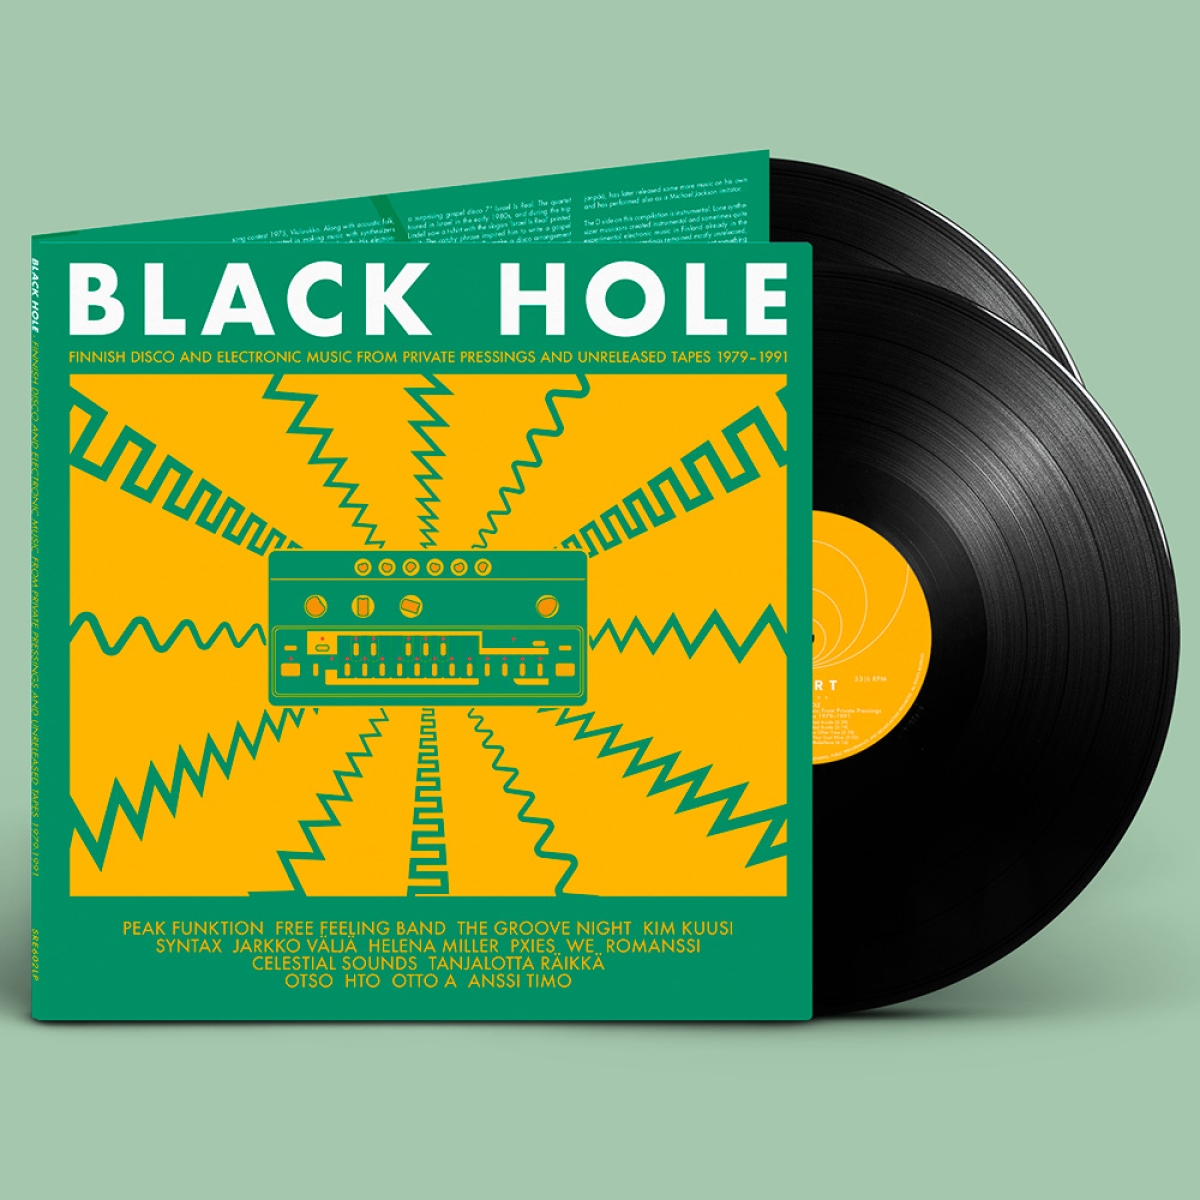 Kuvateksti: Black Hole -kokoelma sisältää edeltäjiensä tapaan kulttiasemaan nousseita kotimaisia syntikka- ja diskobiisejä.